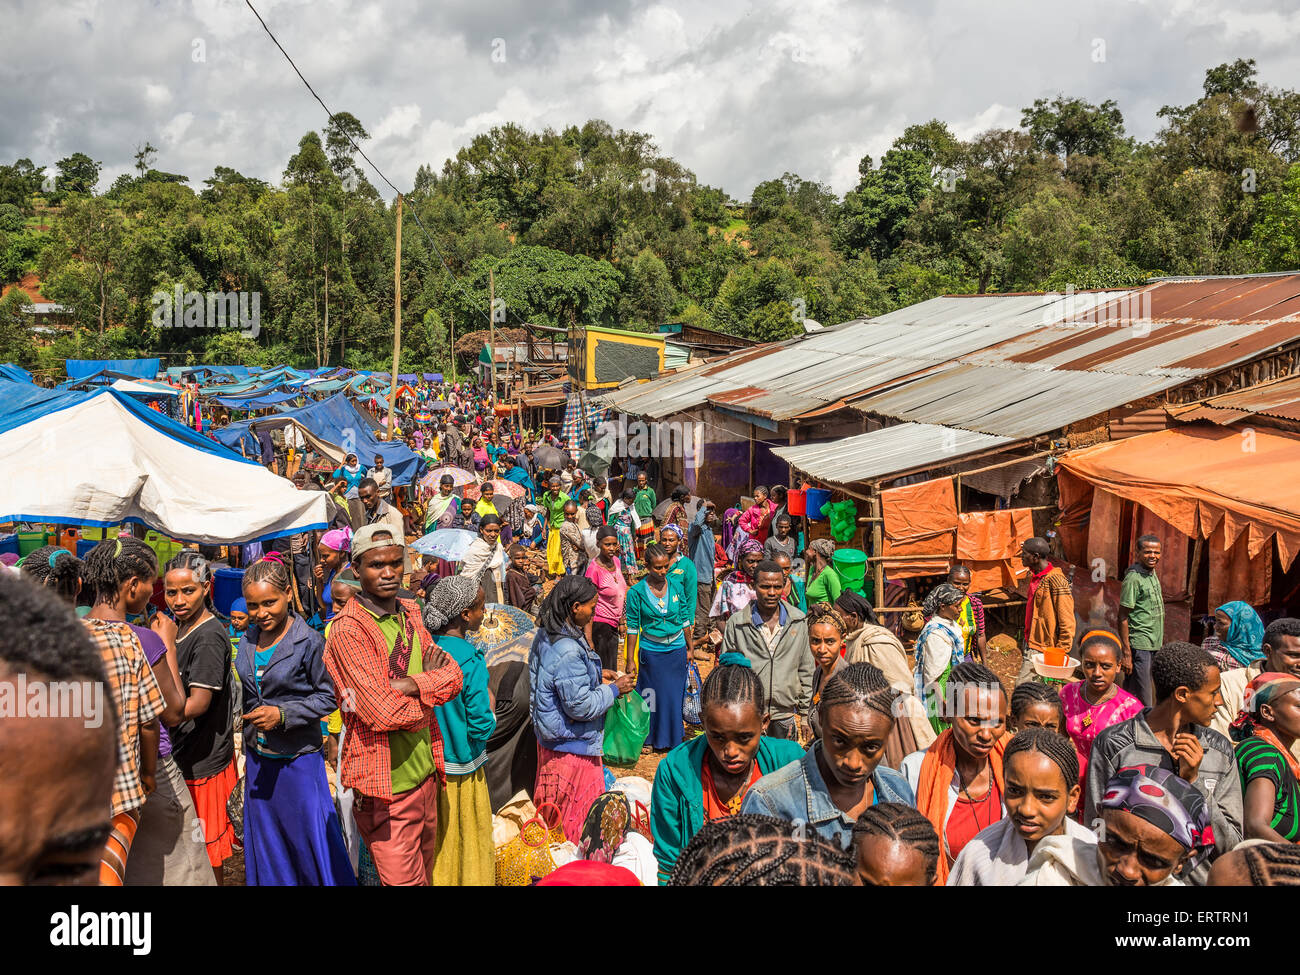 Popolare e affollato mercato africano in Jimma, Etiopia con molte persone che acquistano e vendono. Foto Stock